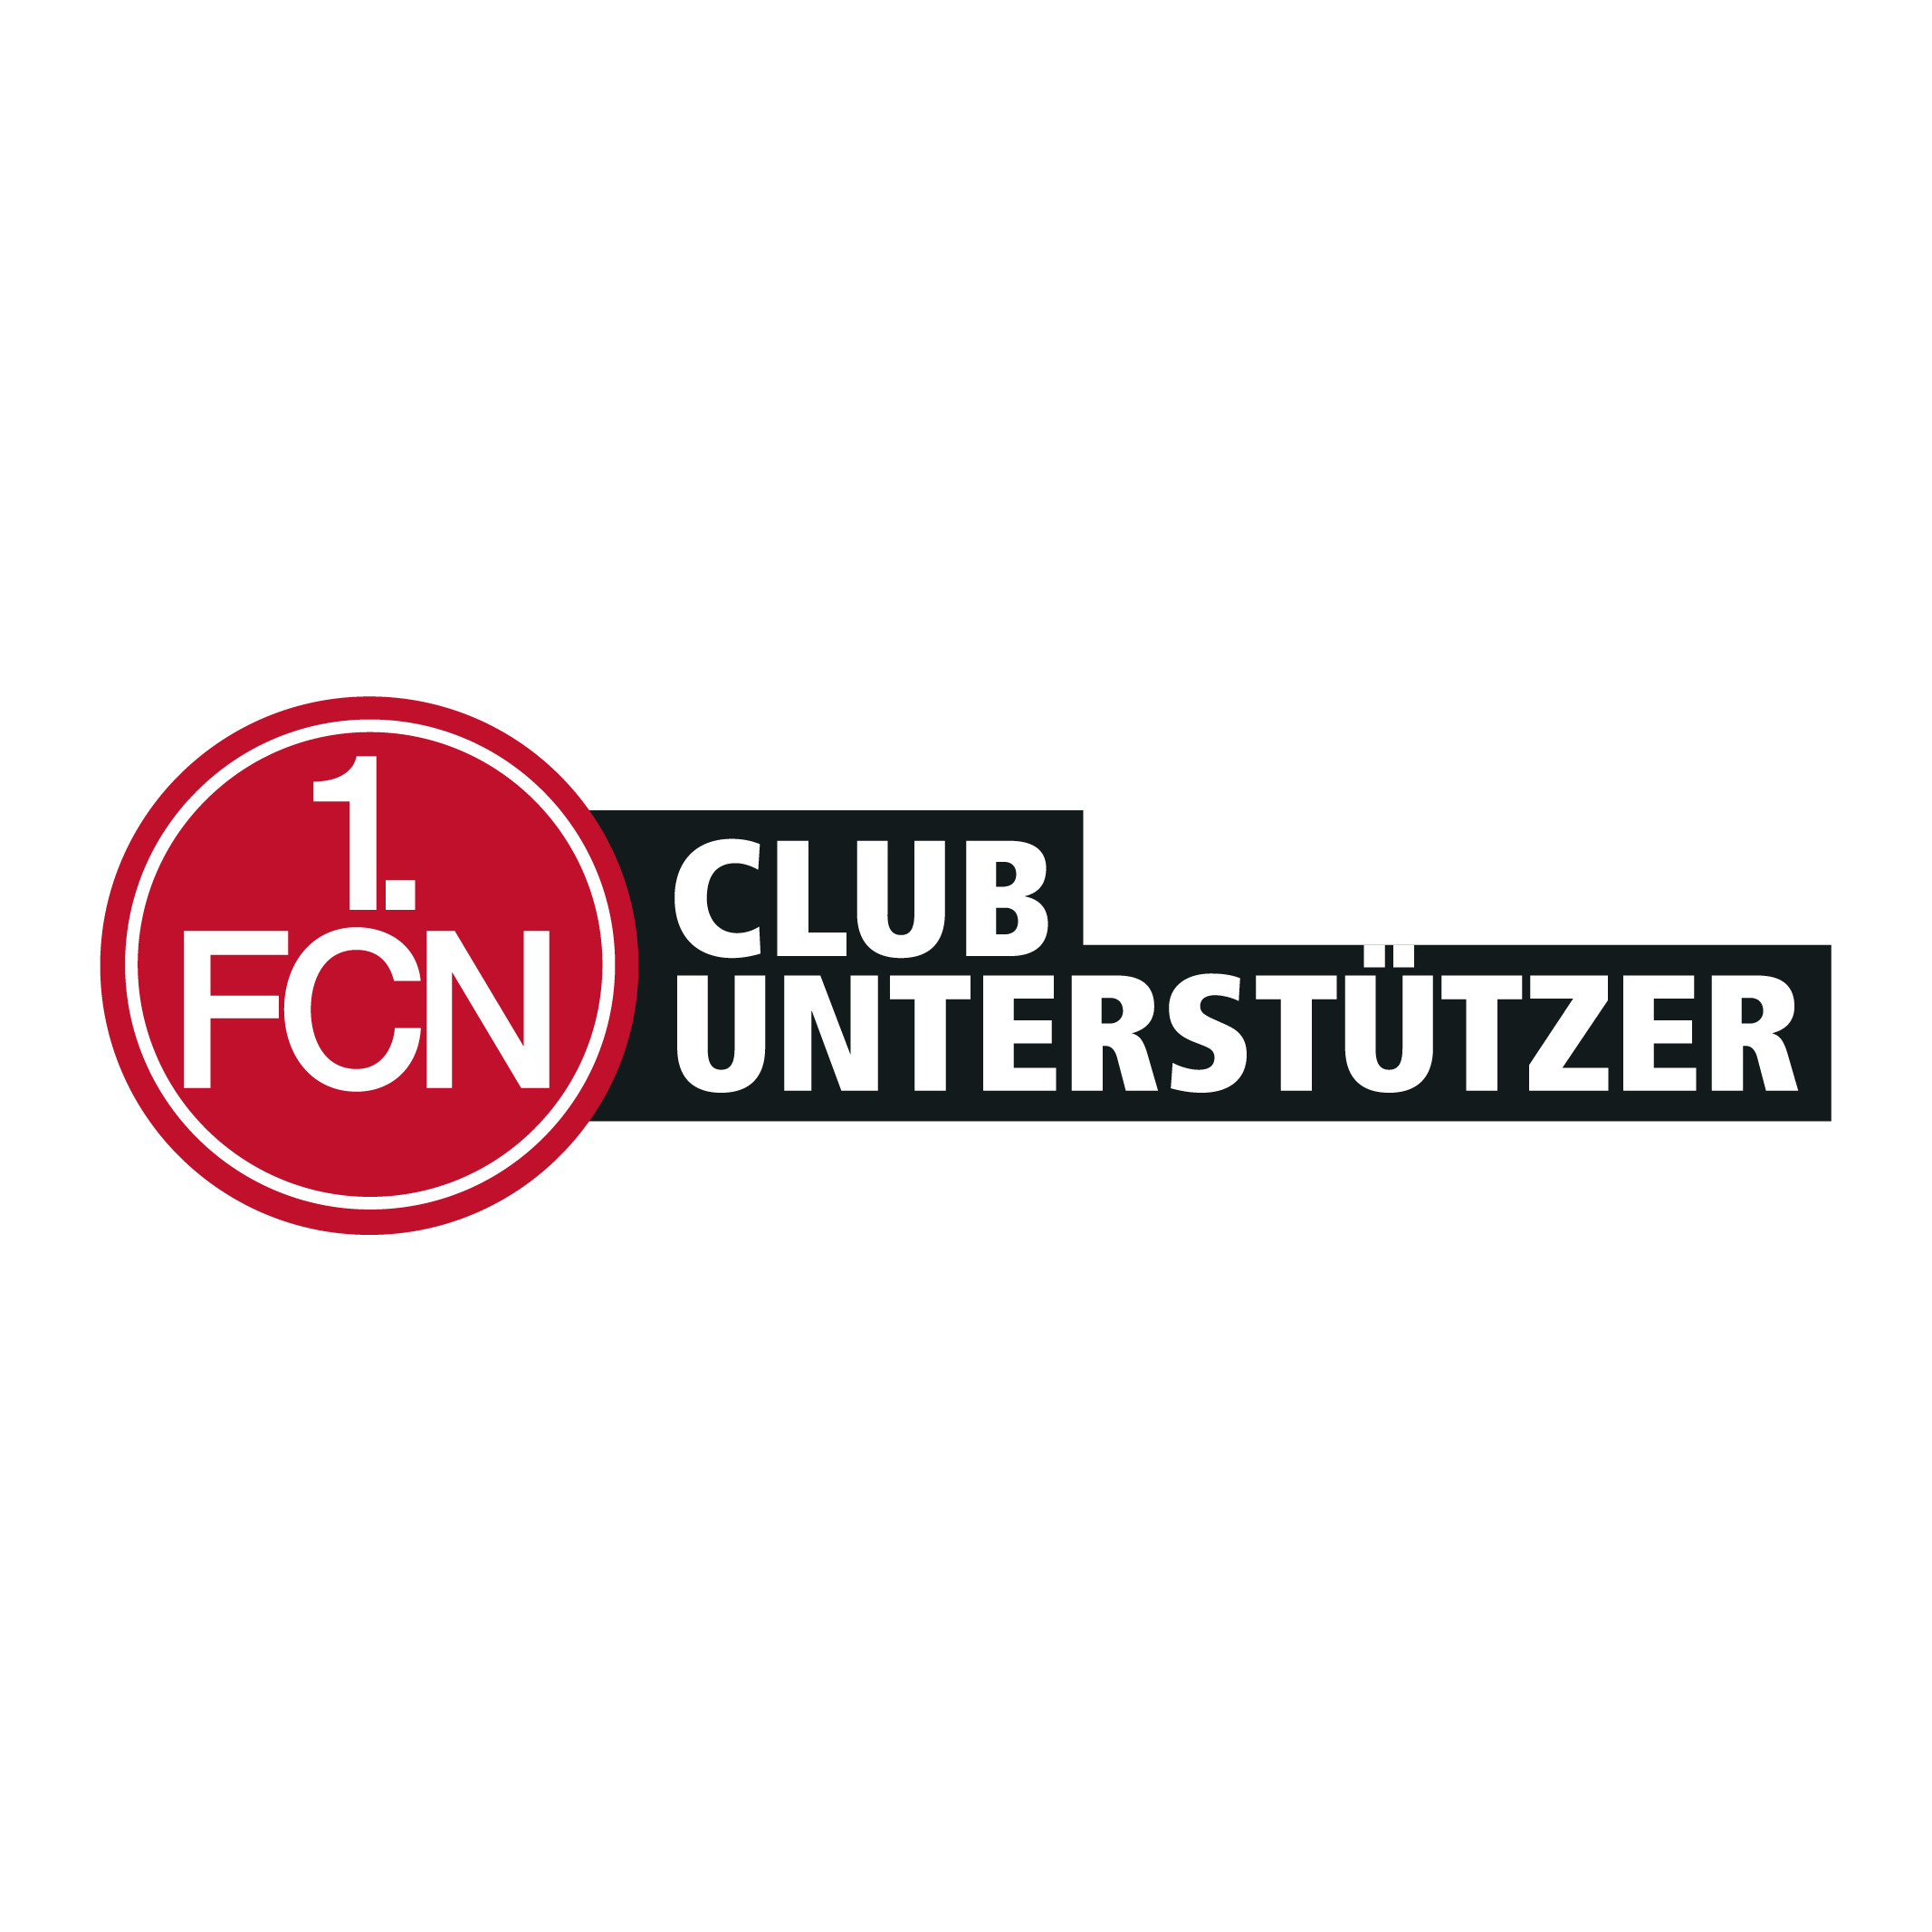 1.FCN ClubUnterstützer 